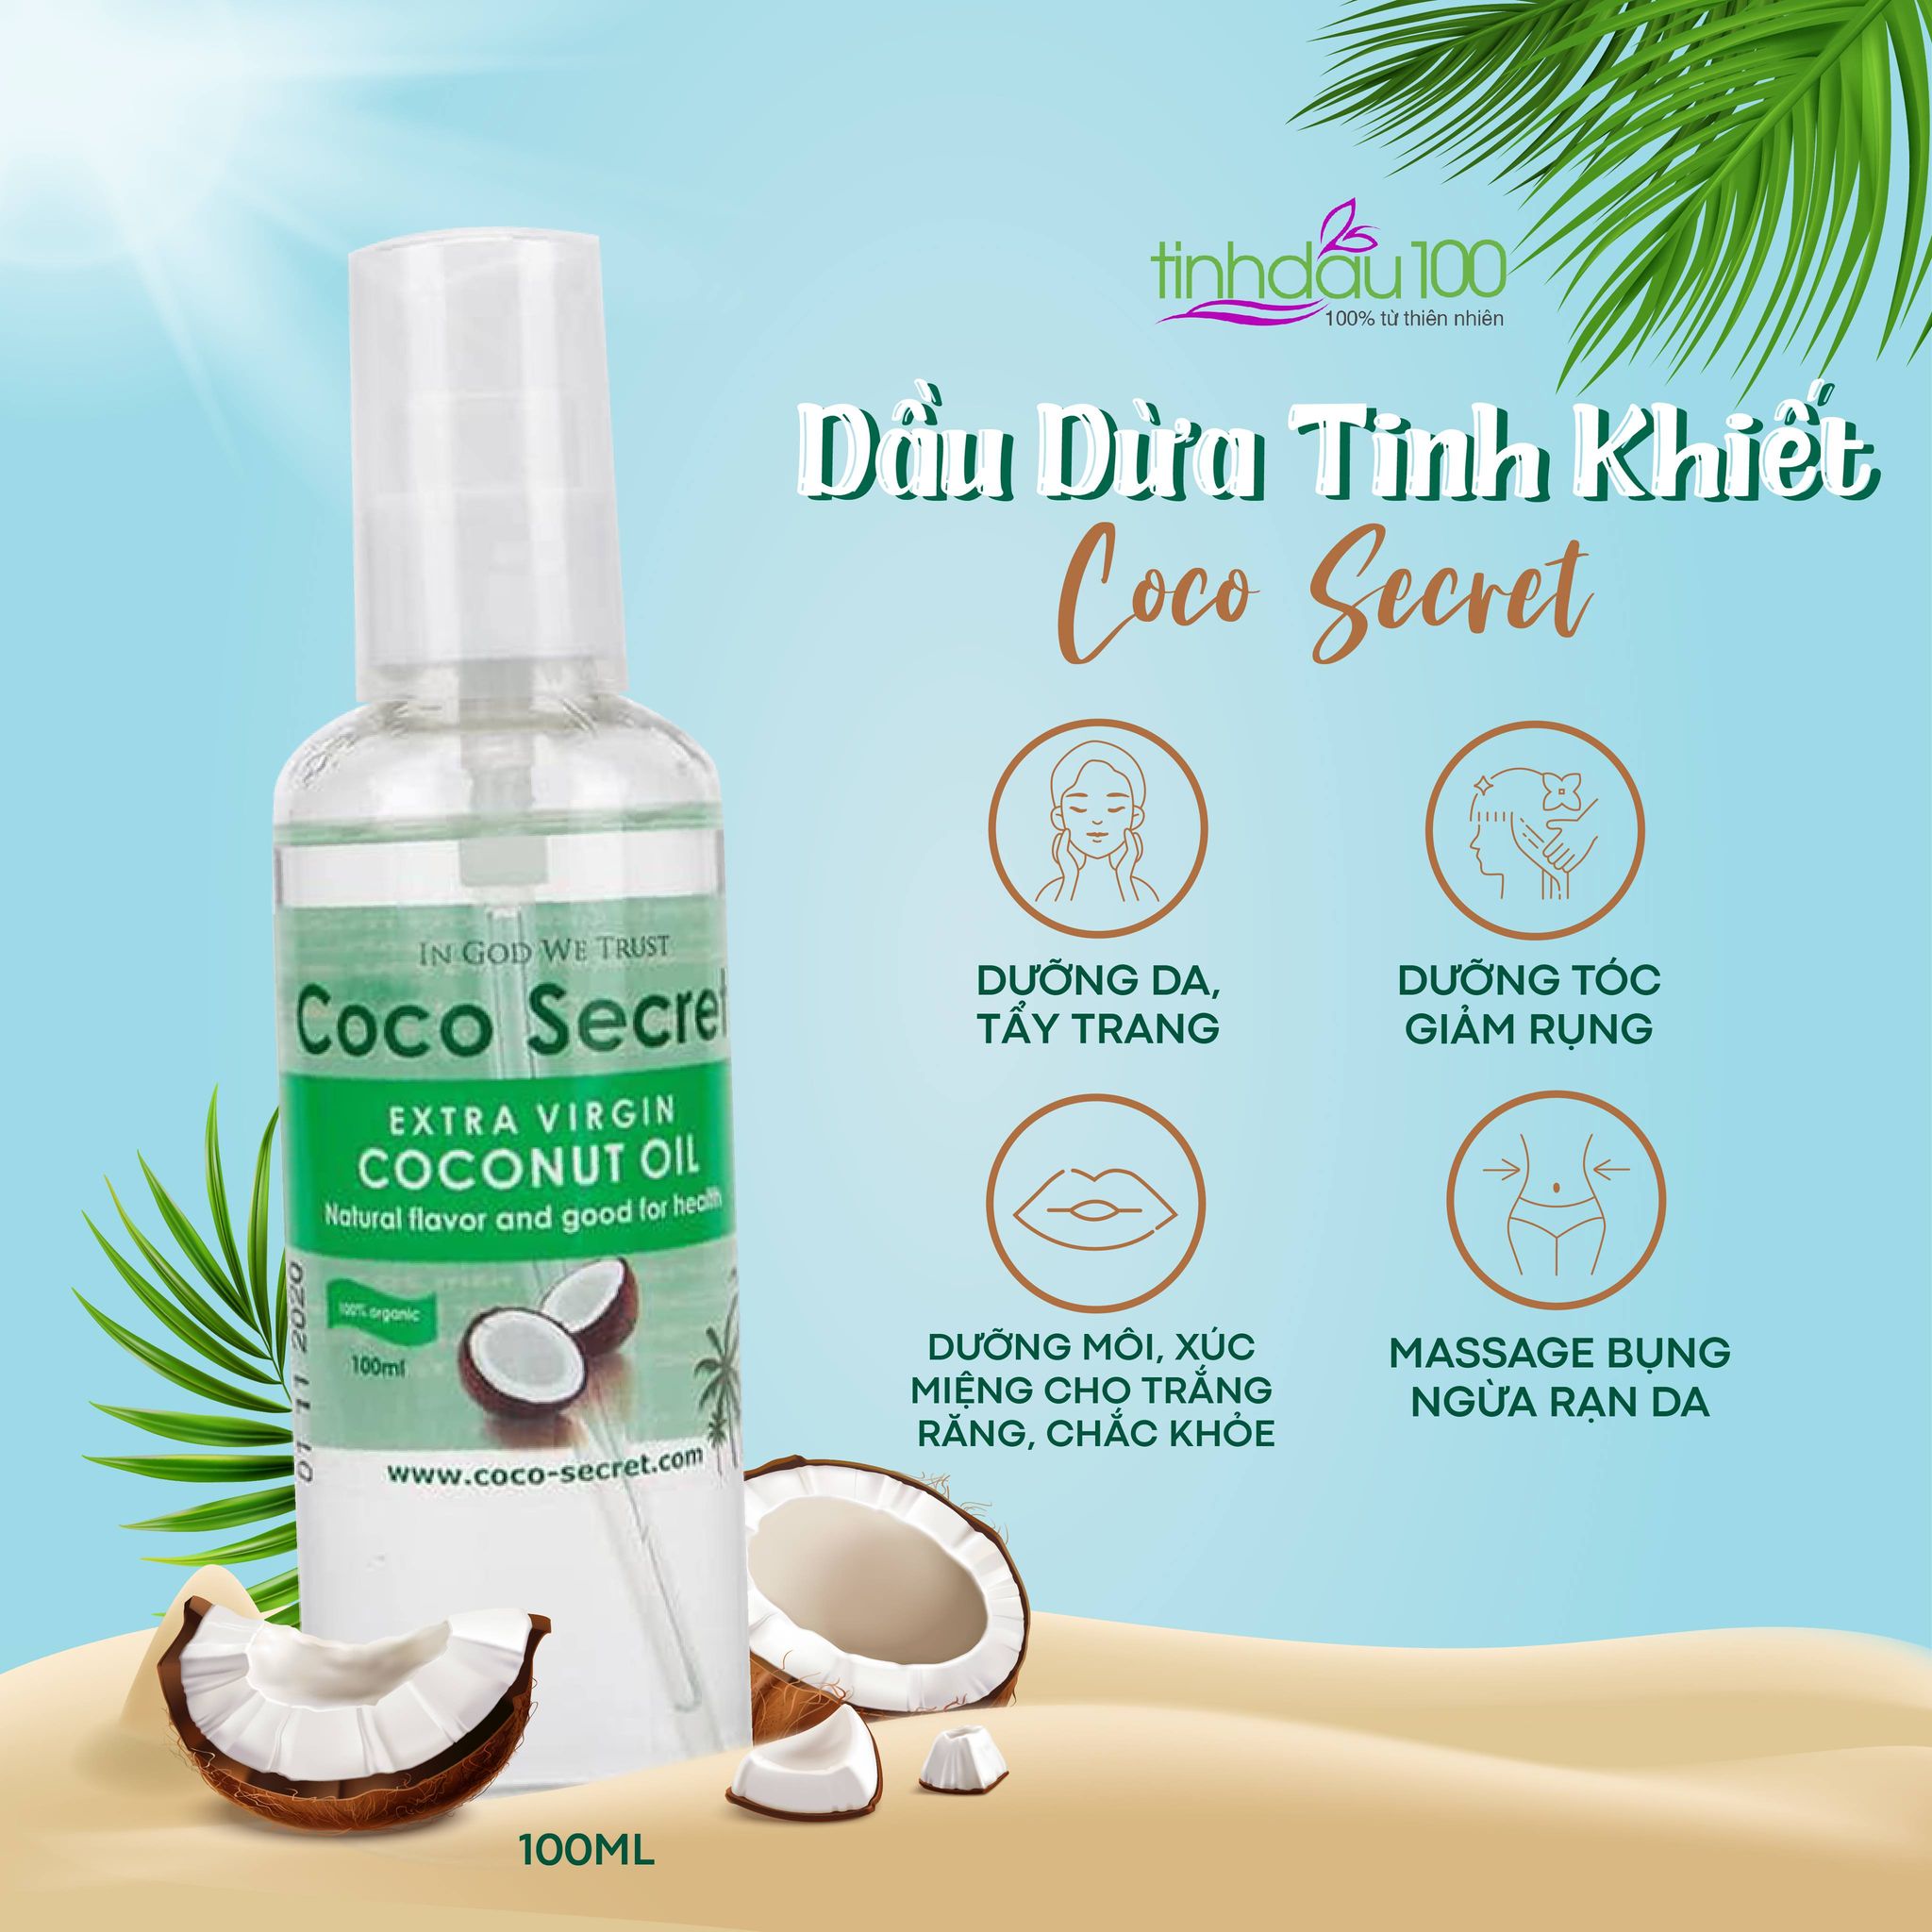 Dầu dừa Coco secret nguyên chất dưỡng ẩm da mặt, môi, tẩy trang